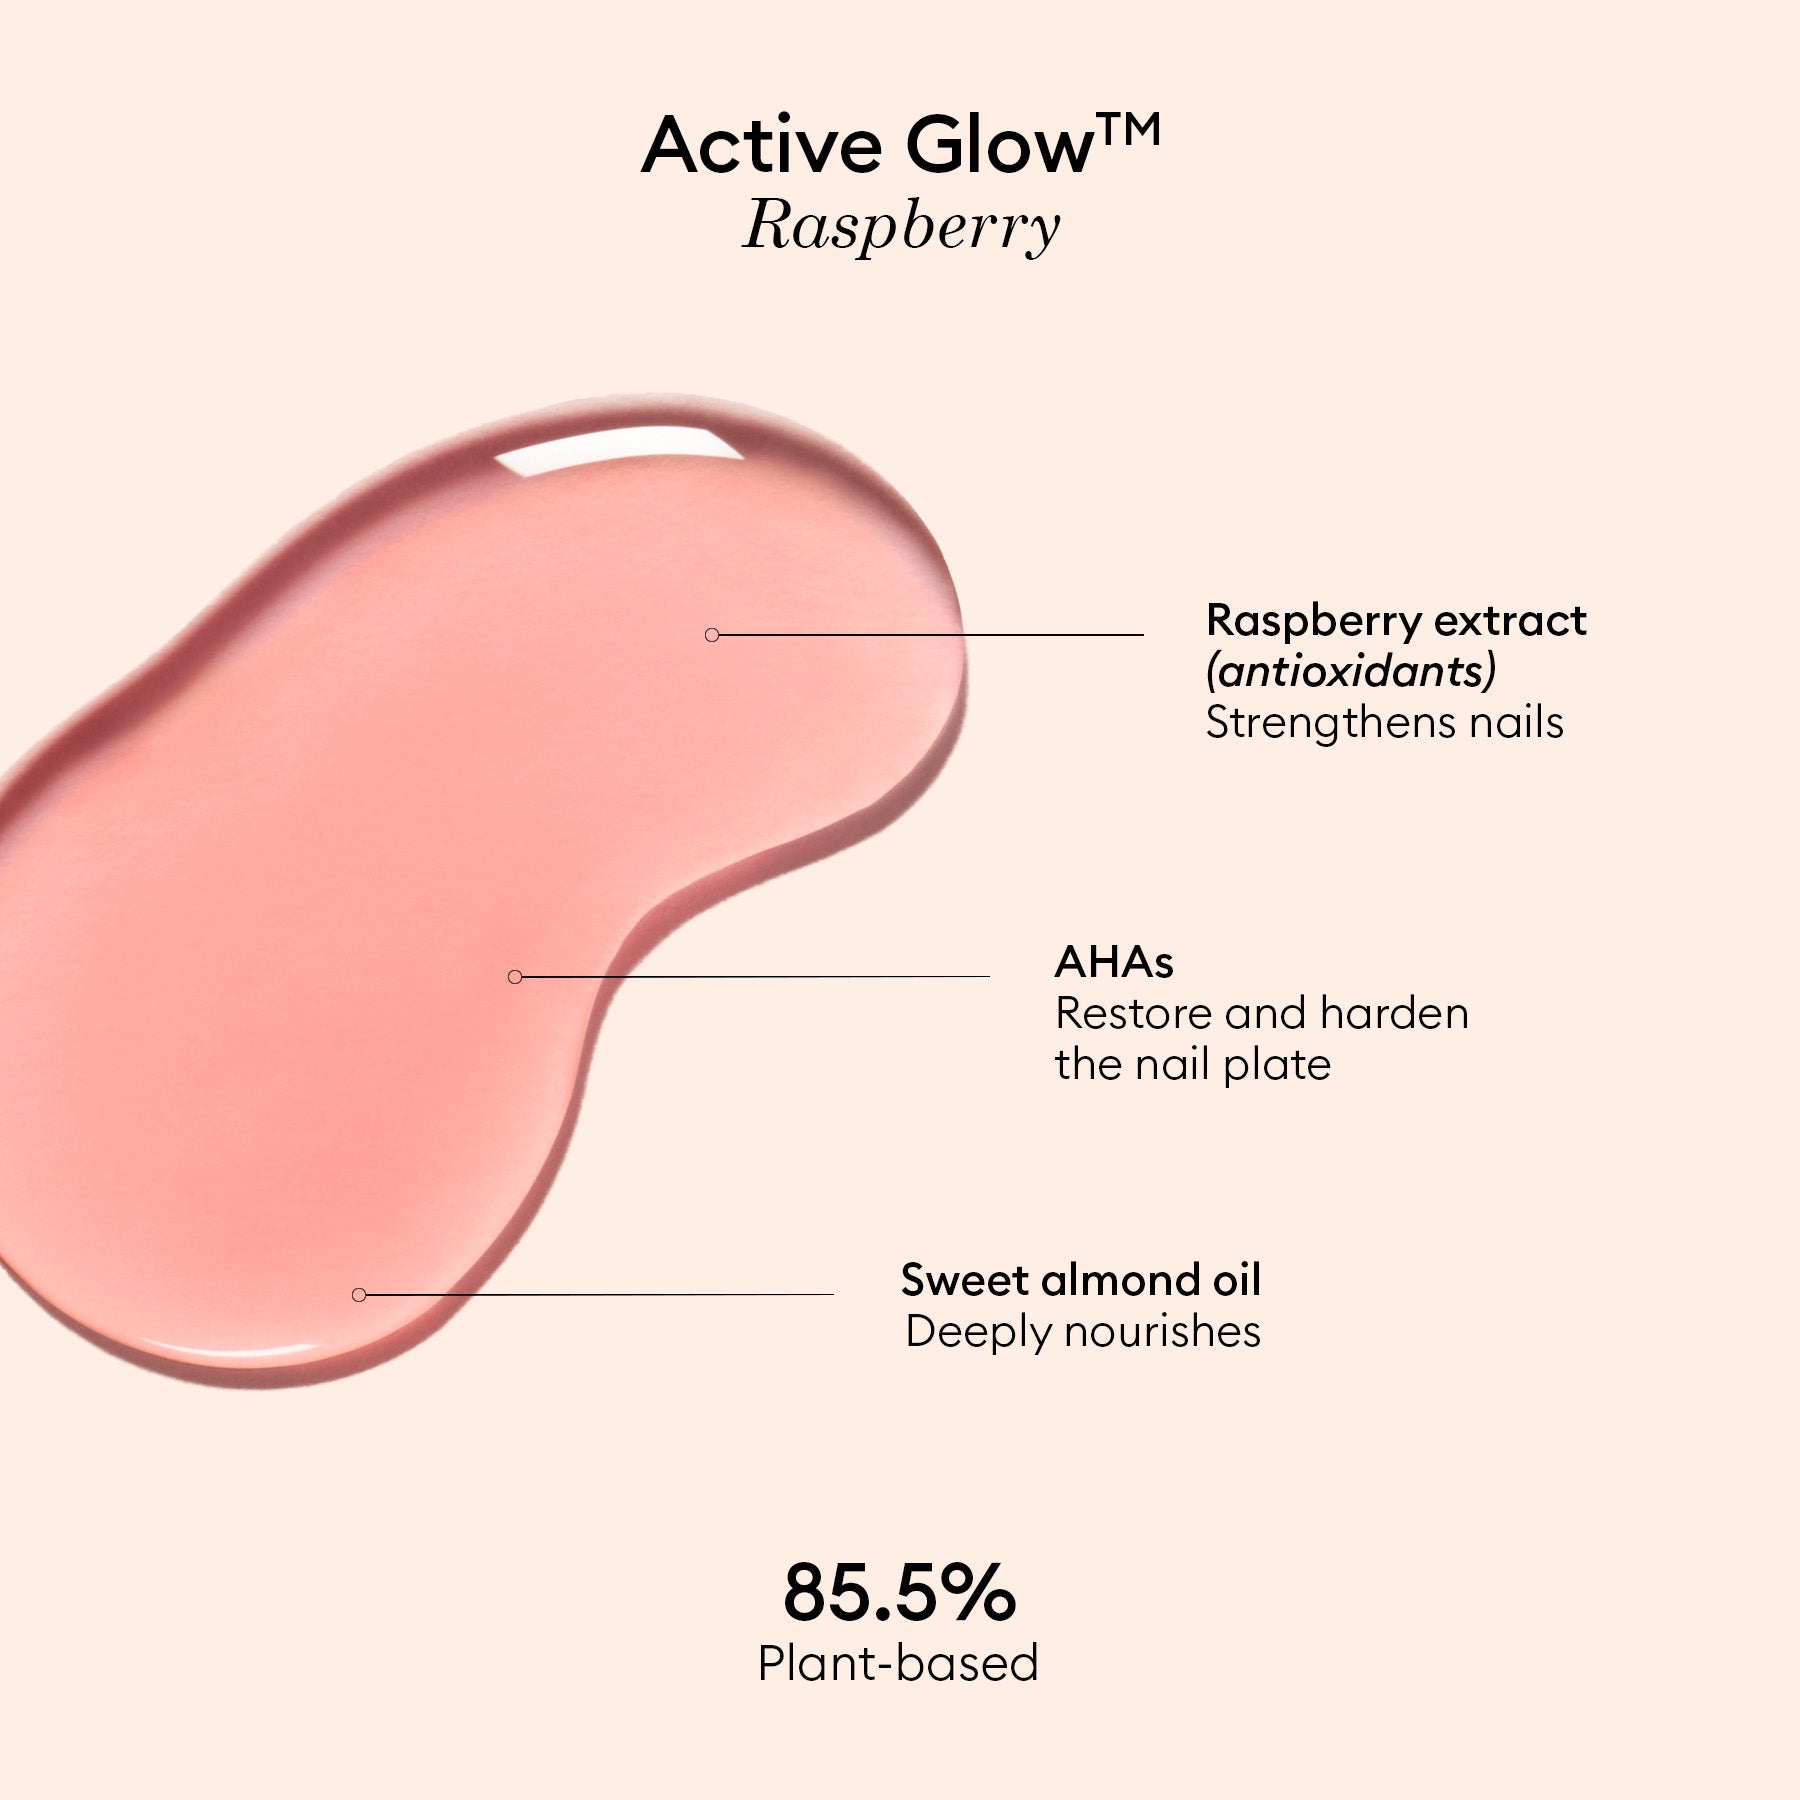 Active Glow™ Raspberry